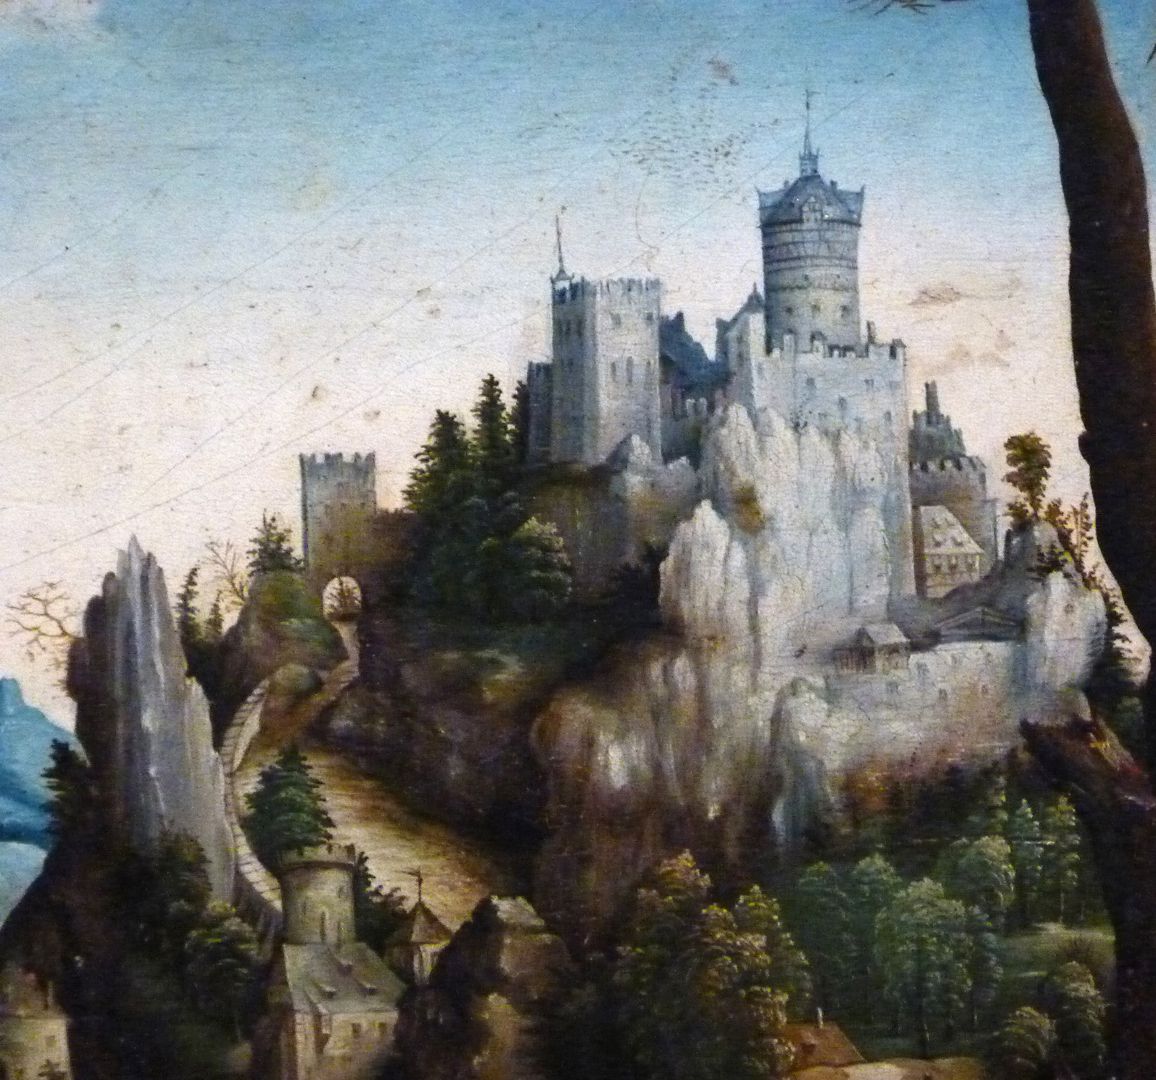 Kopie des hl. Eustachius nach Albrecht Dürer Detail mit Burg